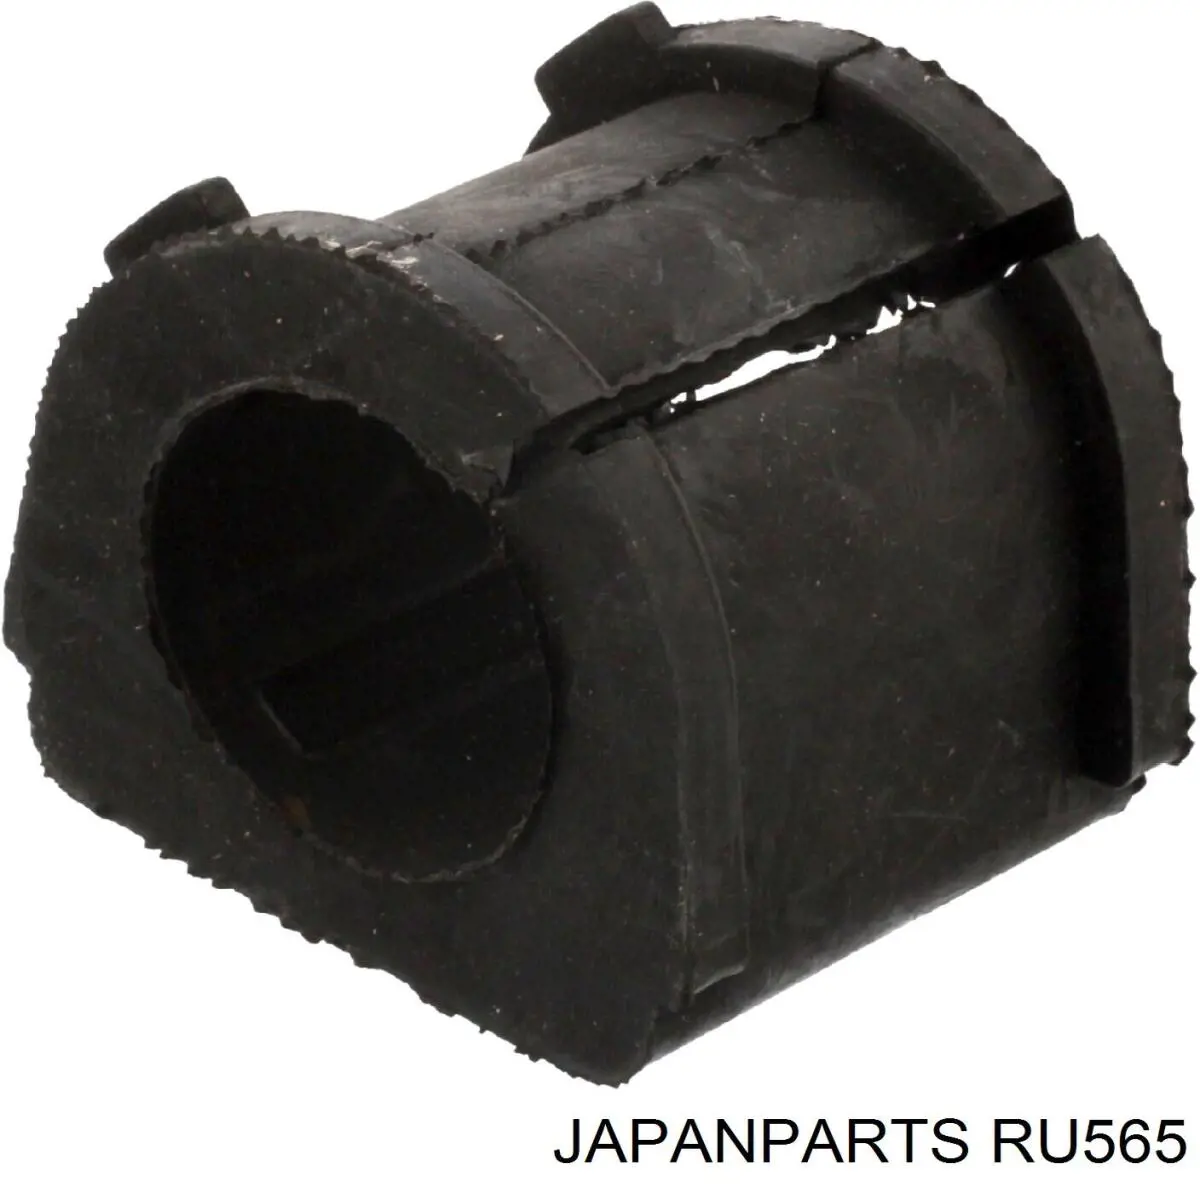 RU-565 Japan Parts casquillo de barra estabilizadora delantera